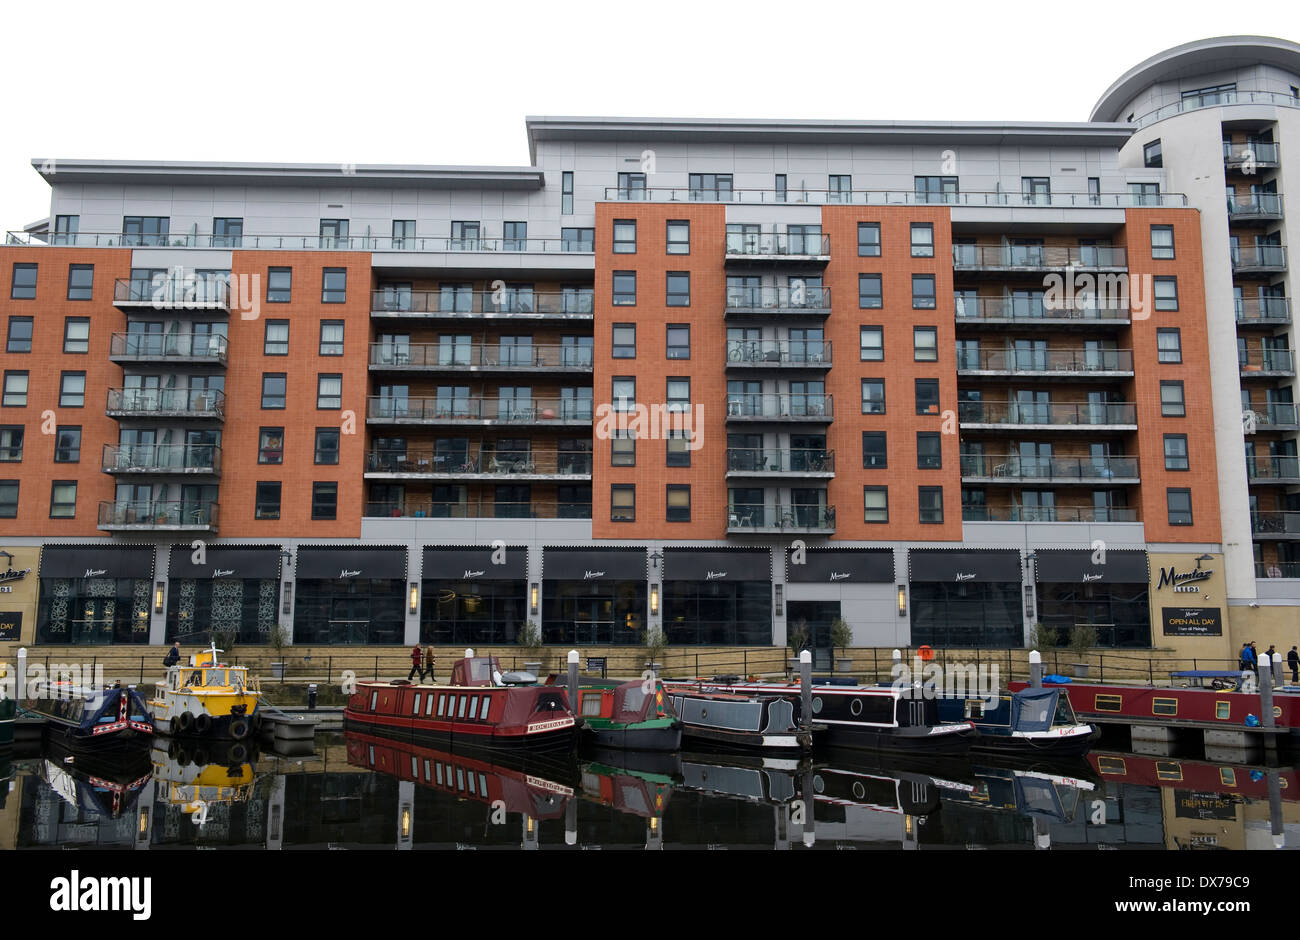 Des Barges à nouveau Dock (anciennement Clarence Dock) qui est un développement mixte avec détail, bureaux et présence de loisirs à Leeds, Royaume-Uni Banque D'Images